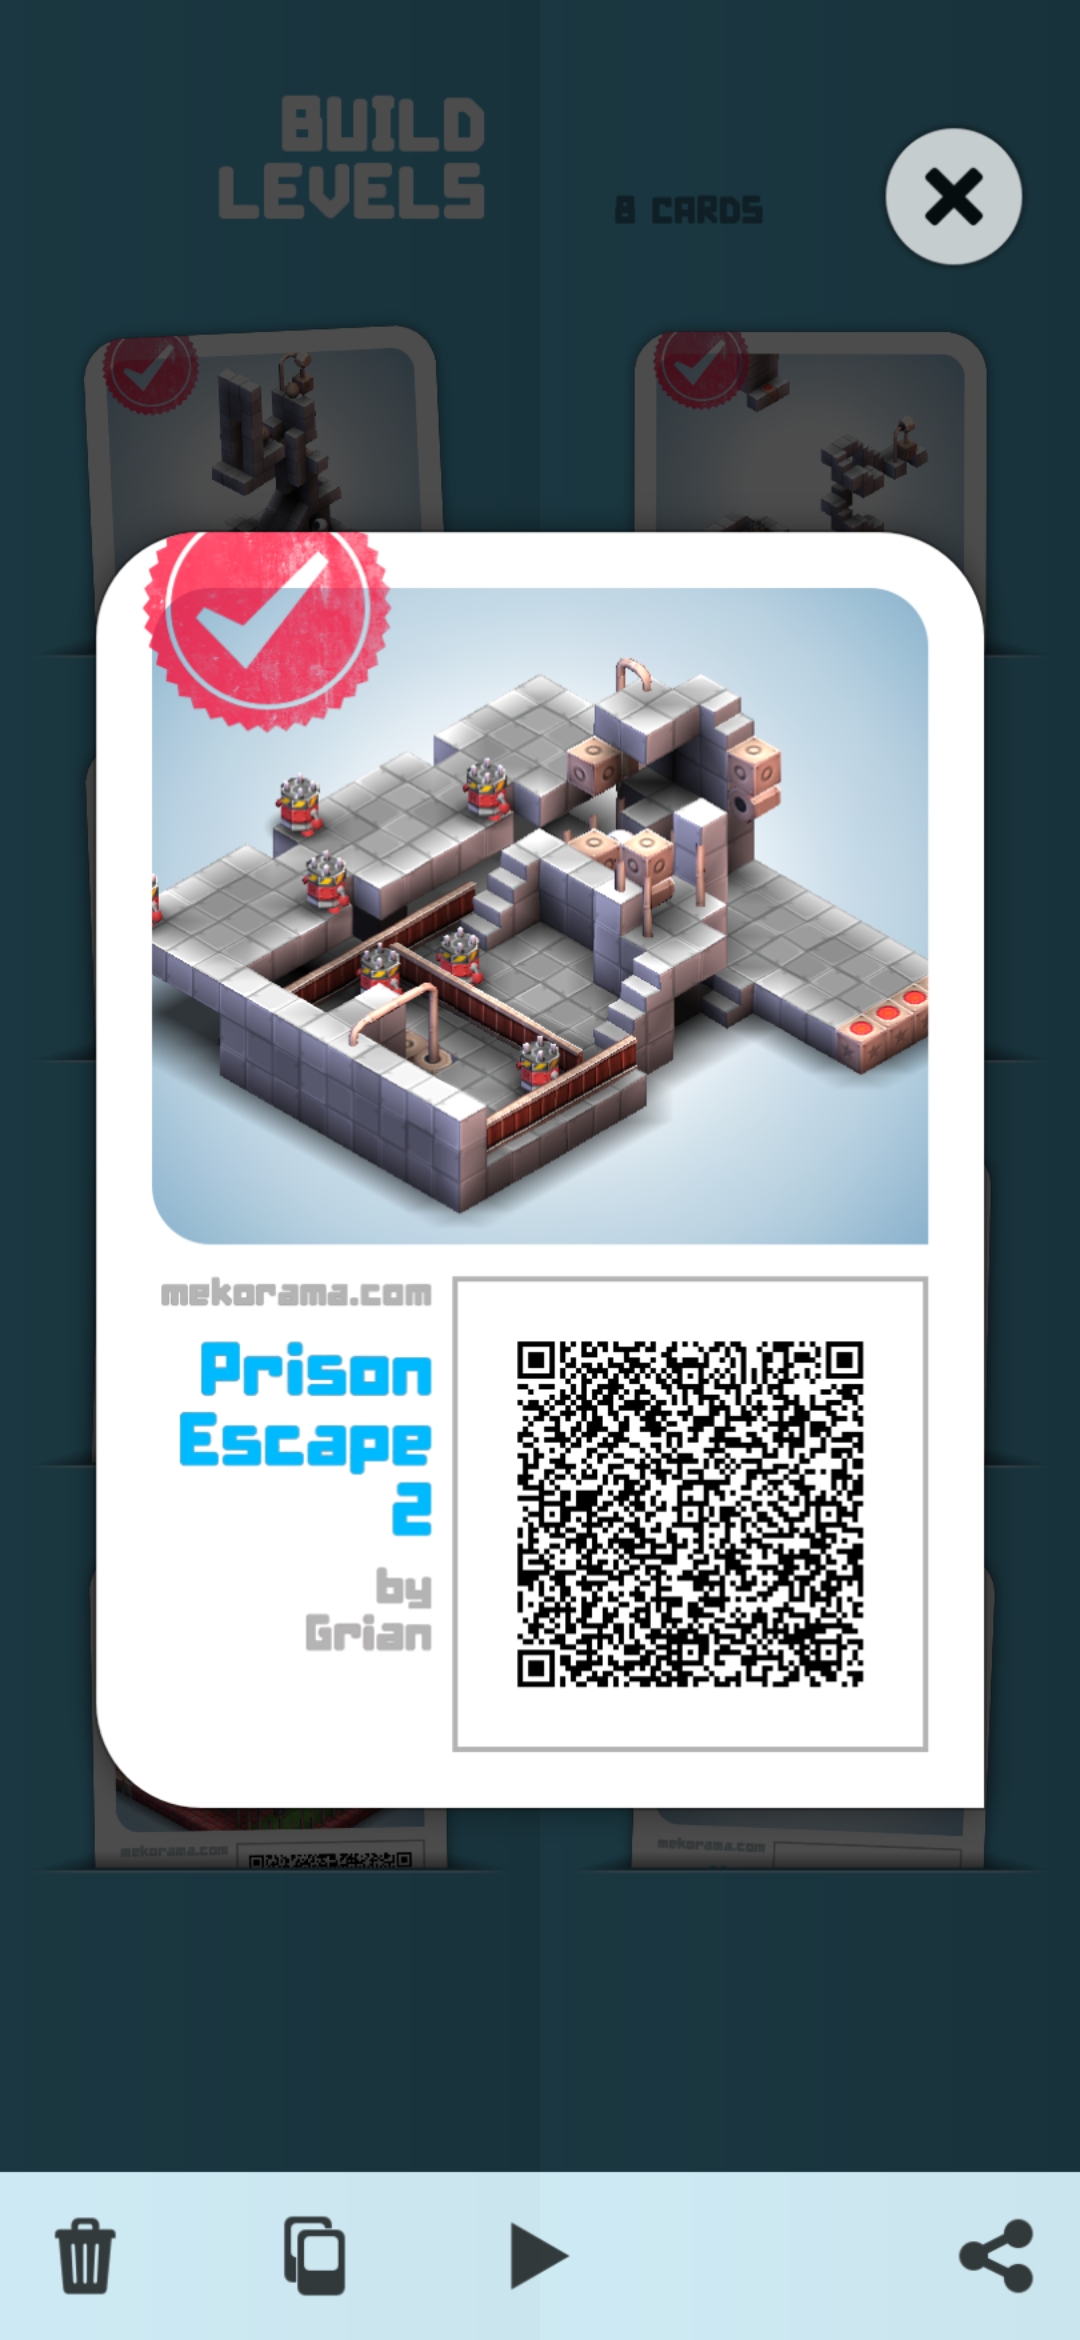 Prison Escape 2